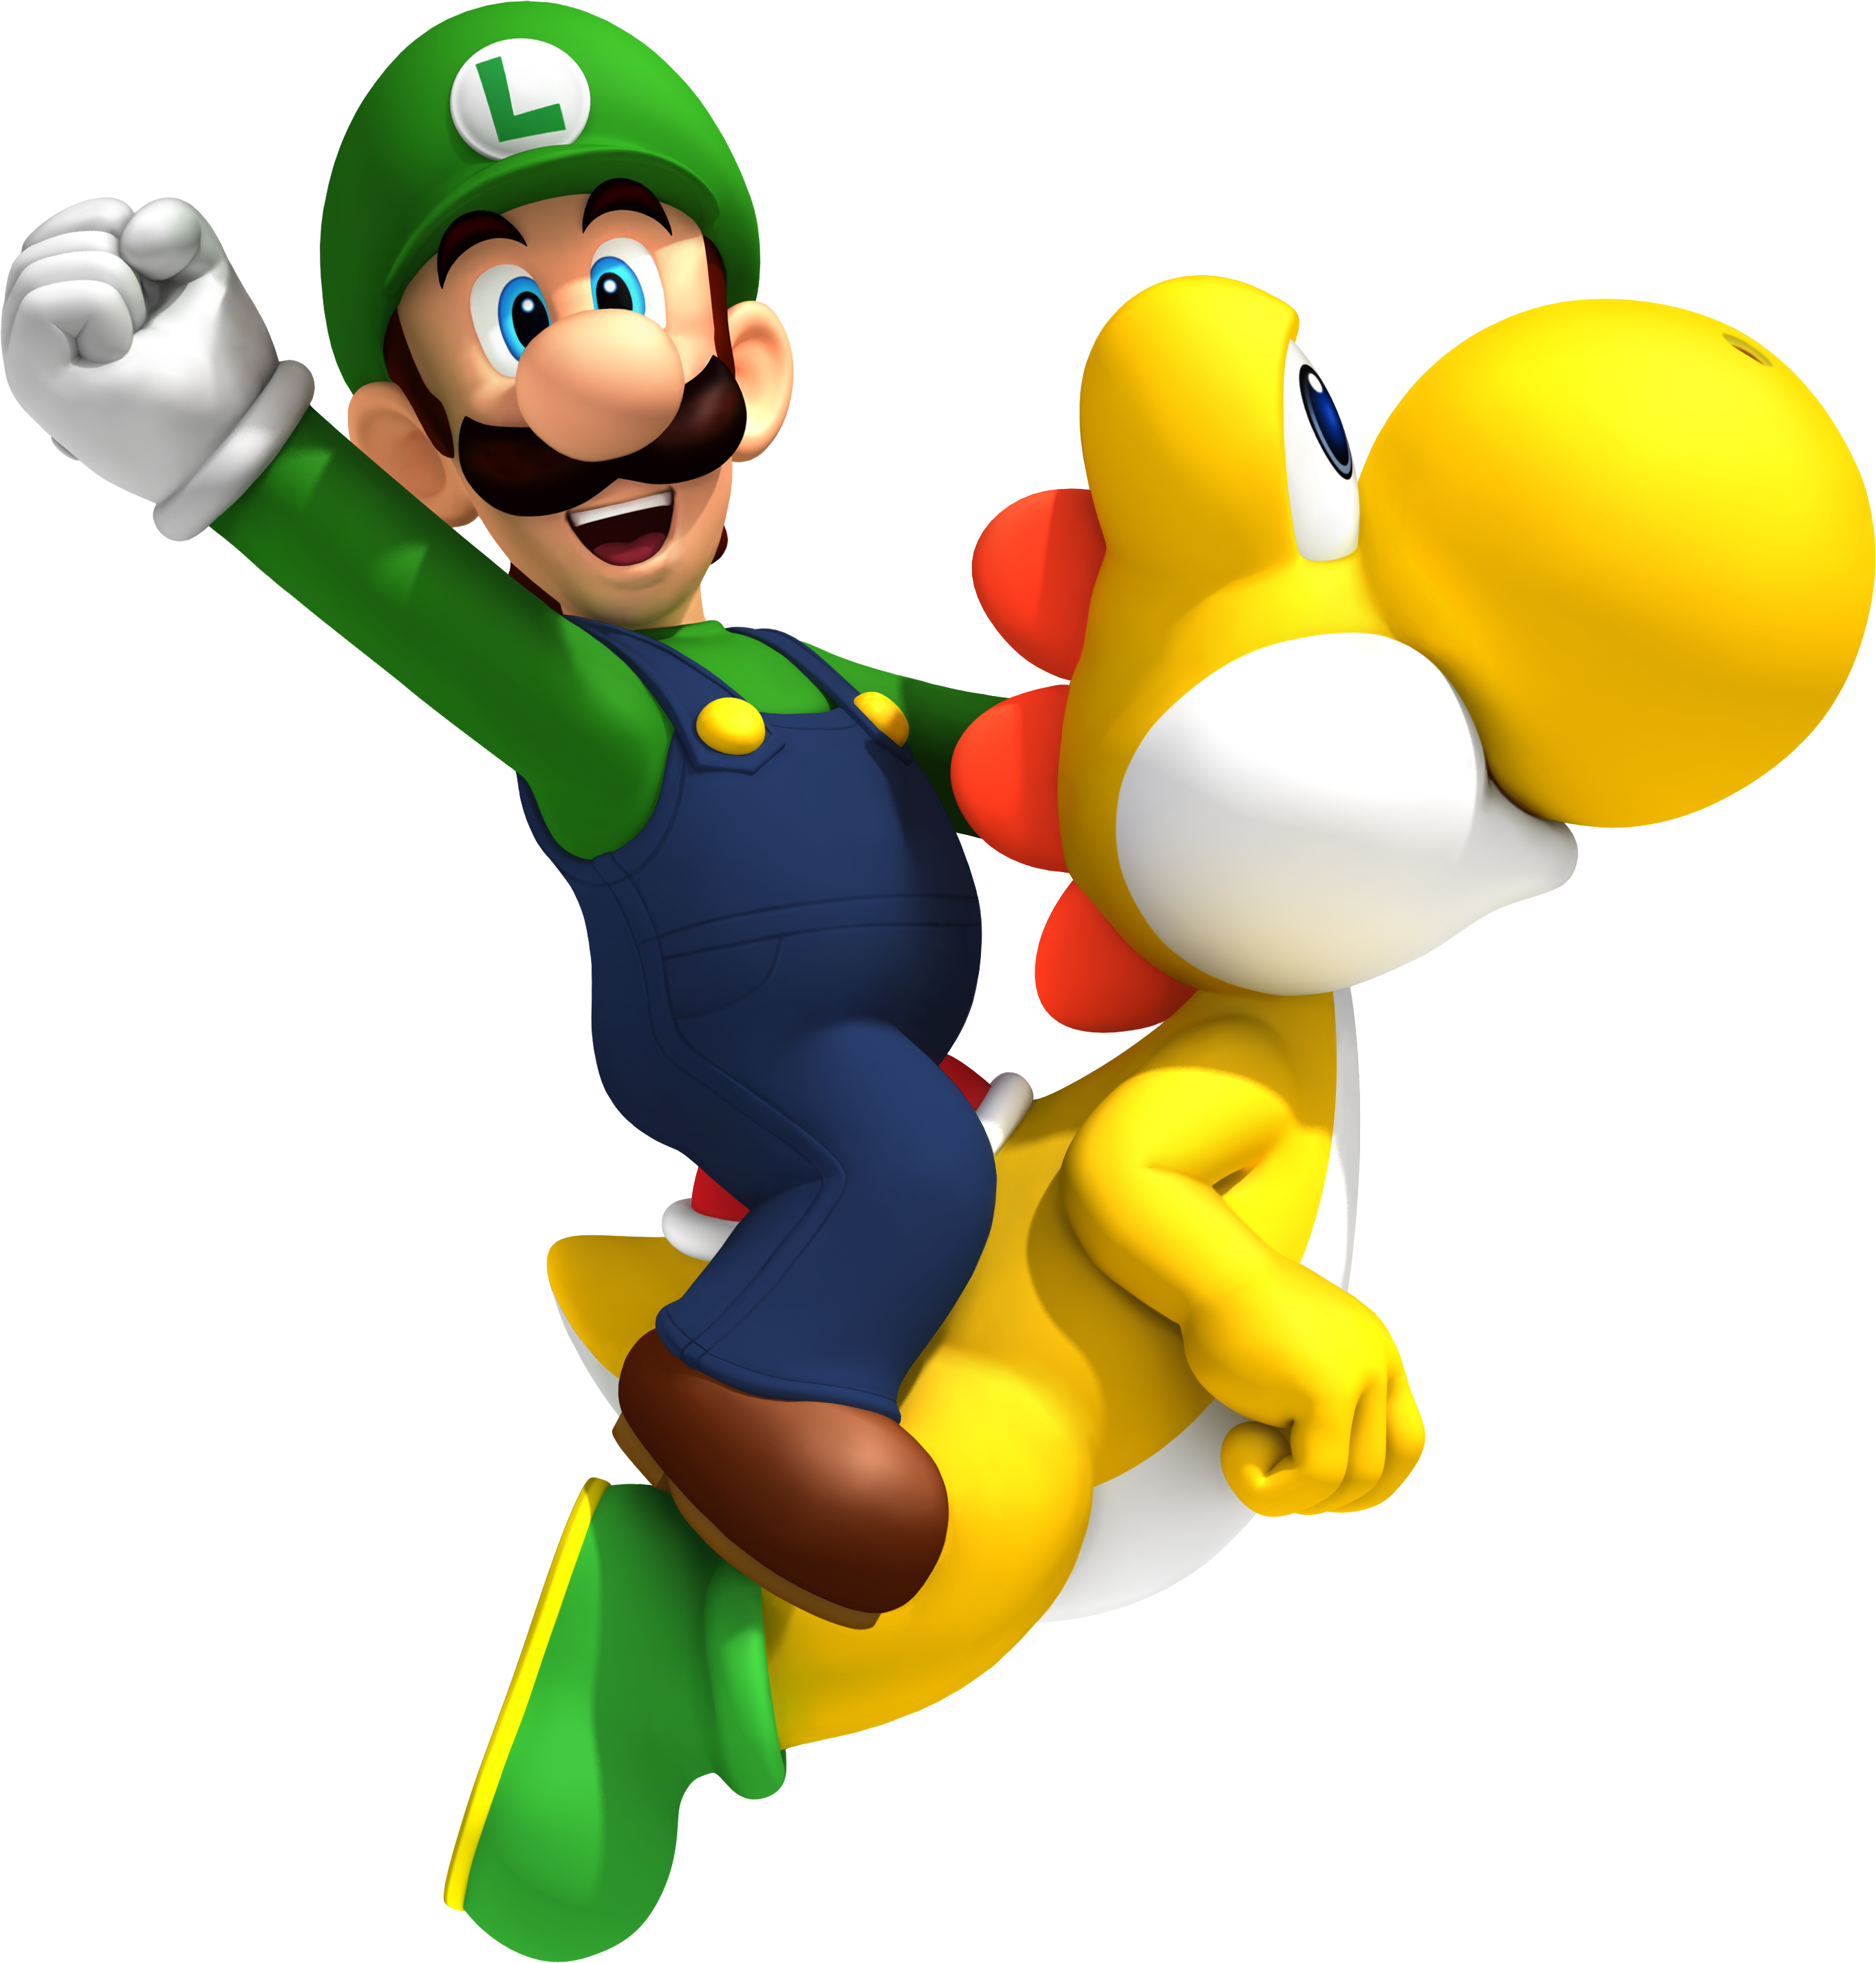 Mario bros special. Марио и Луиджи. Марио Луиджи и Йоши. Луиджи брат Марио. Супер Марио БРОС Луиджи.